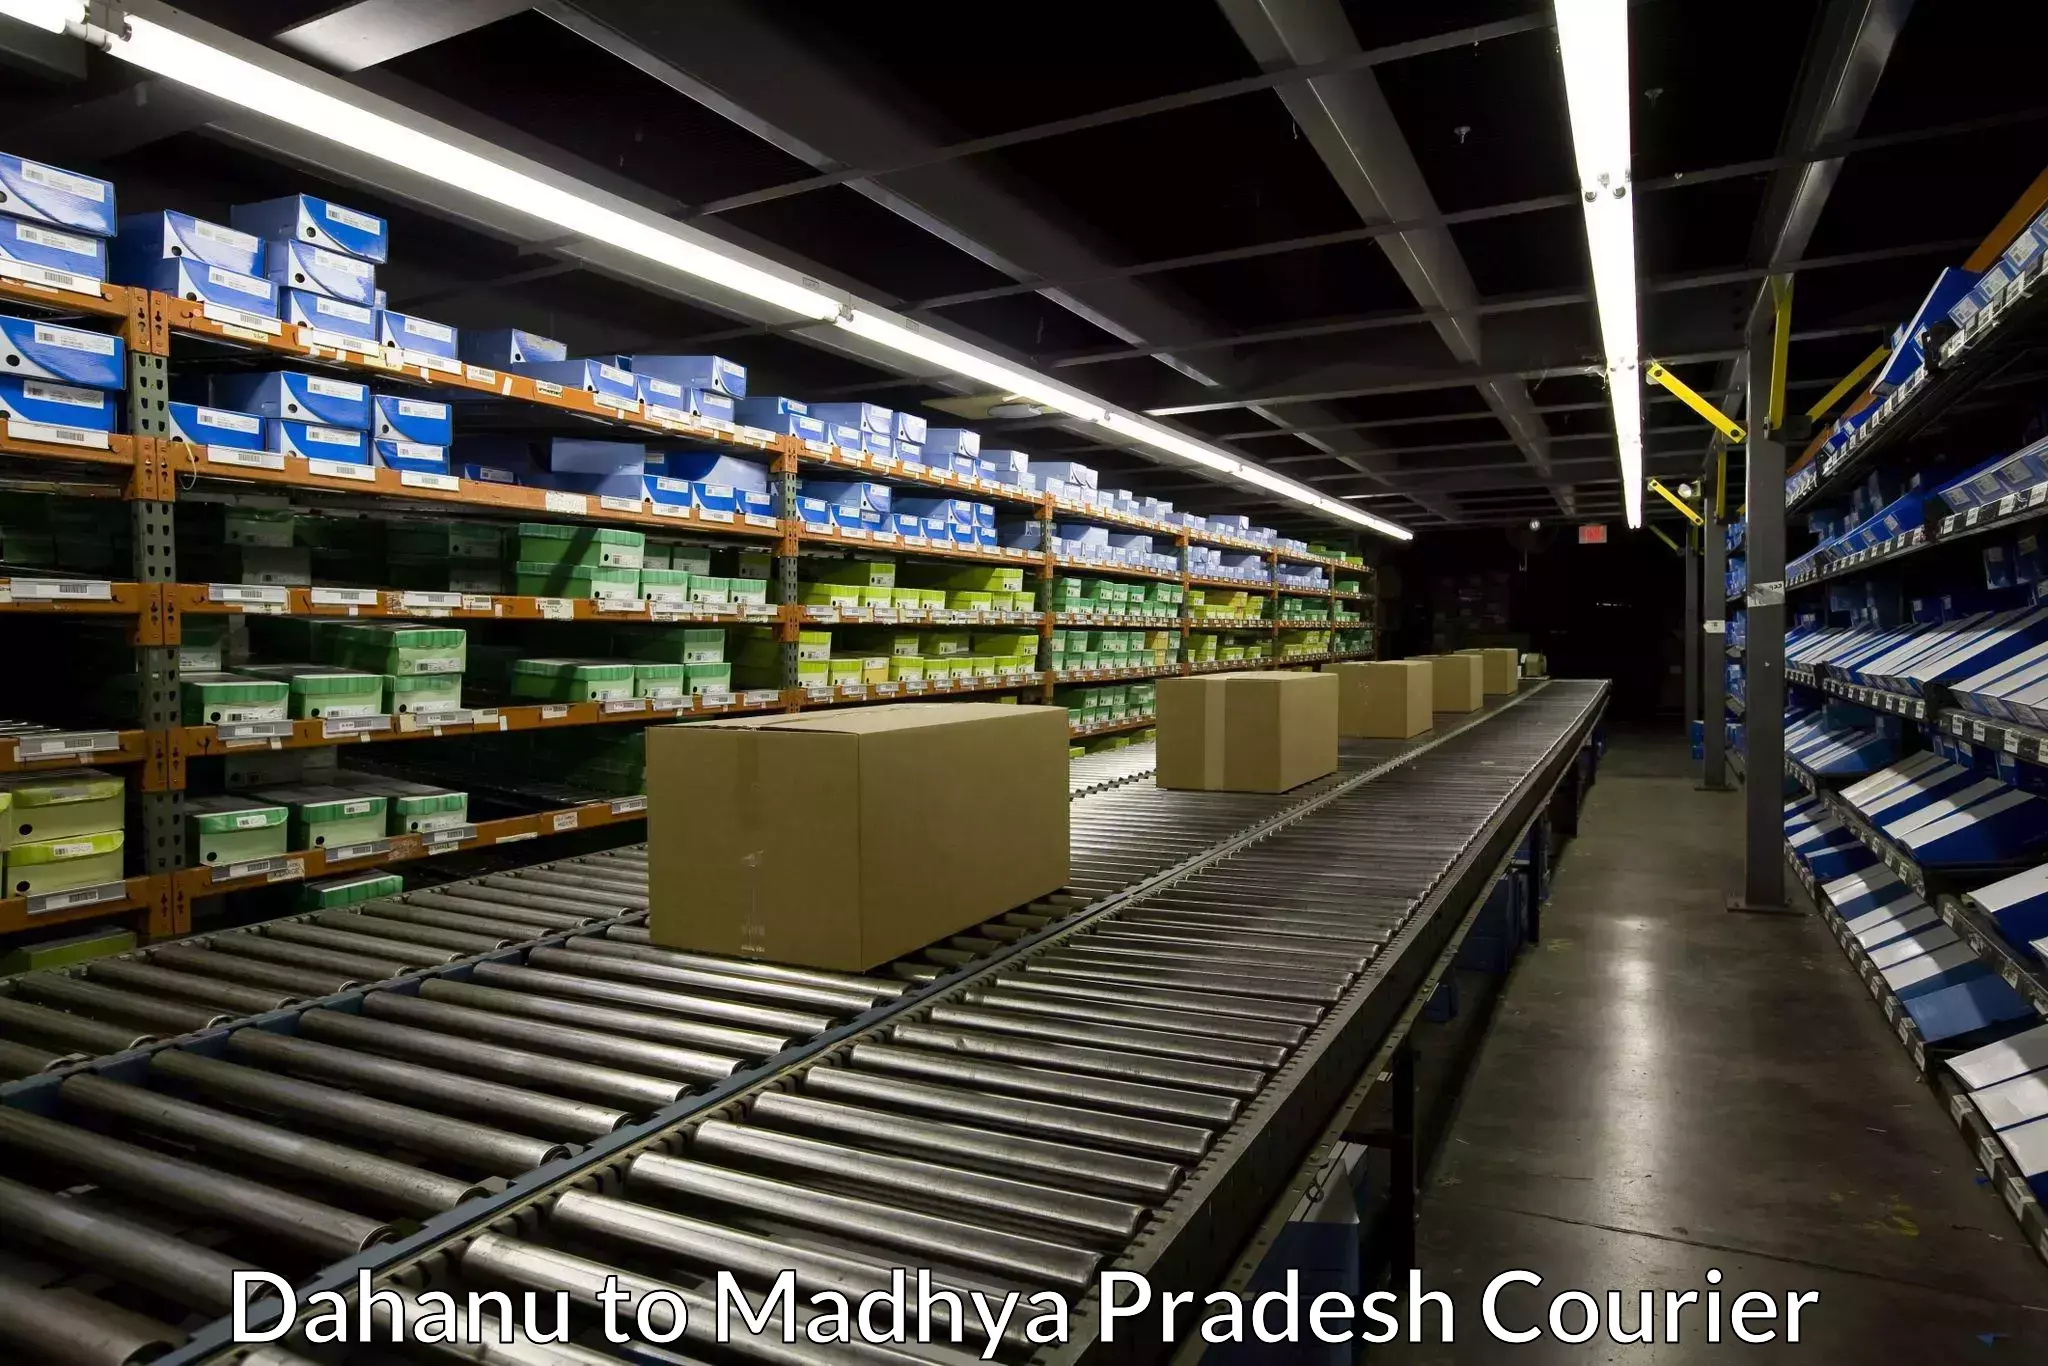 Package delivery network Dahanu to Vijayraghavgarh